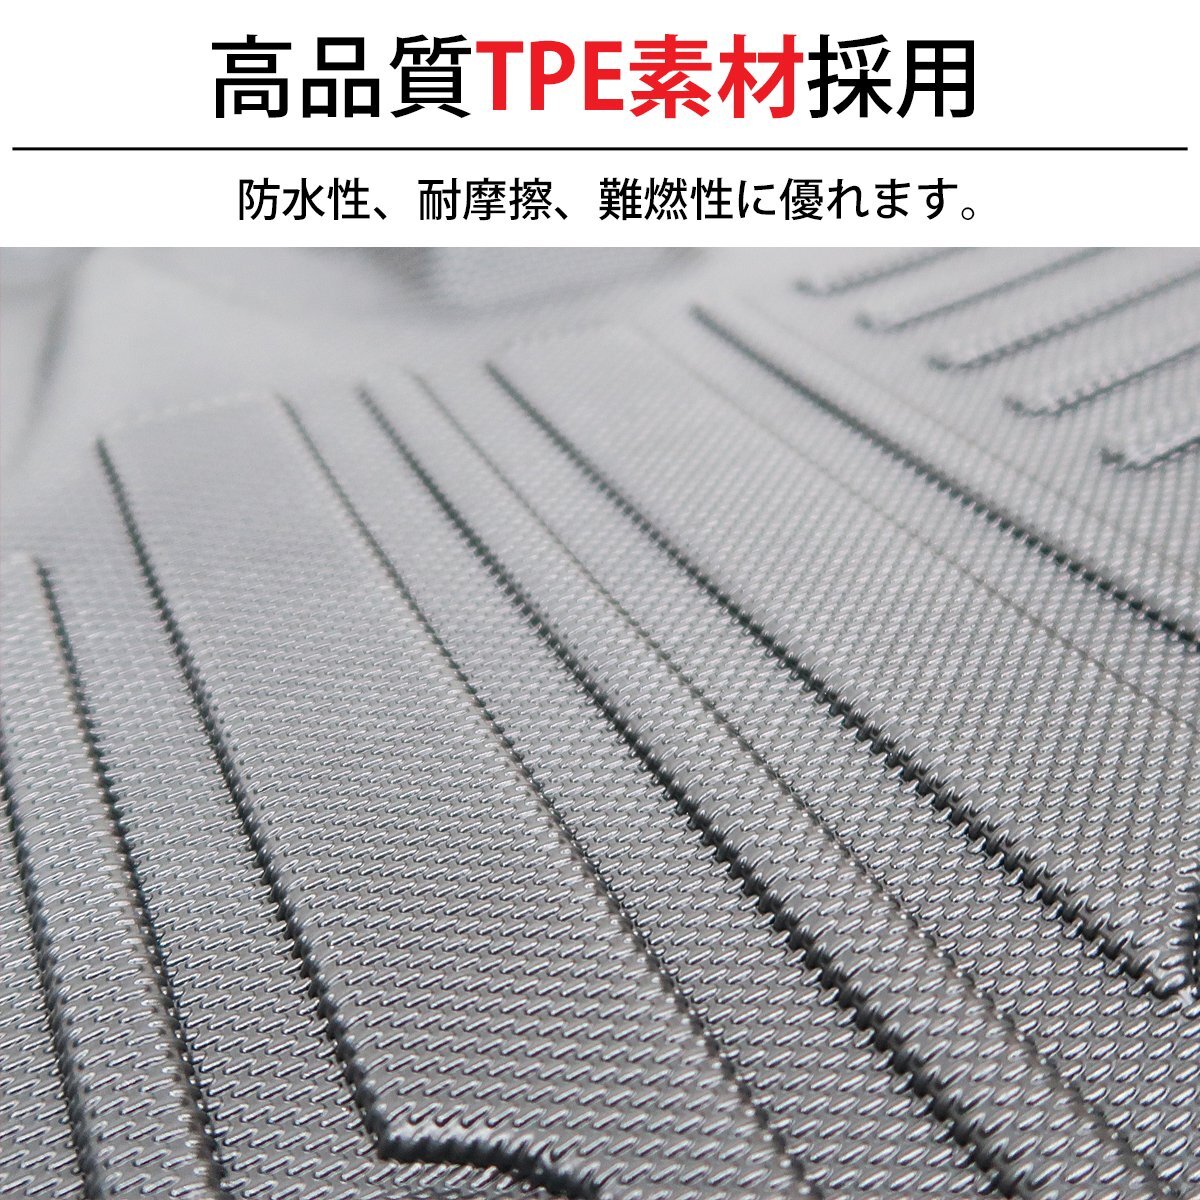 1 иен ~ распродажа Jimny 3D коврик на пол цельный коврик standard body для автомобильный коврик TPE материал цельный формирование смещение предотвращение загрязнения предотвращение HI-28JM